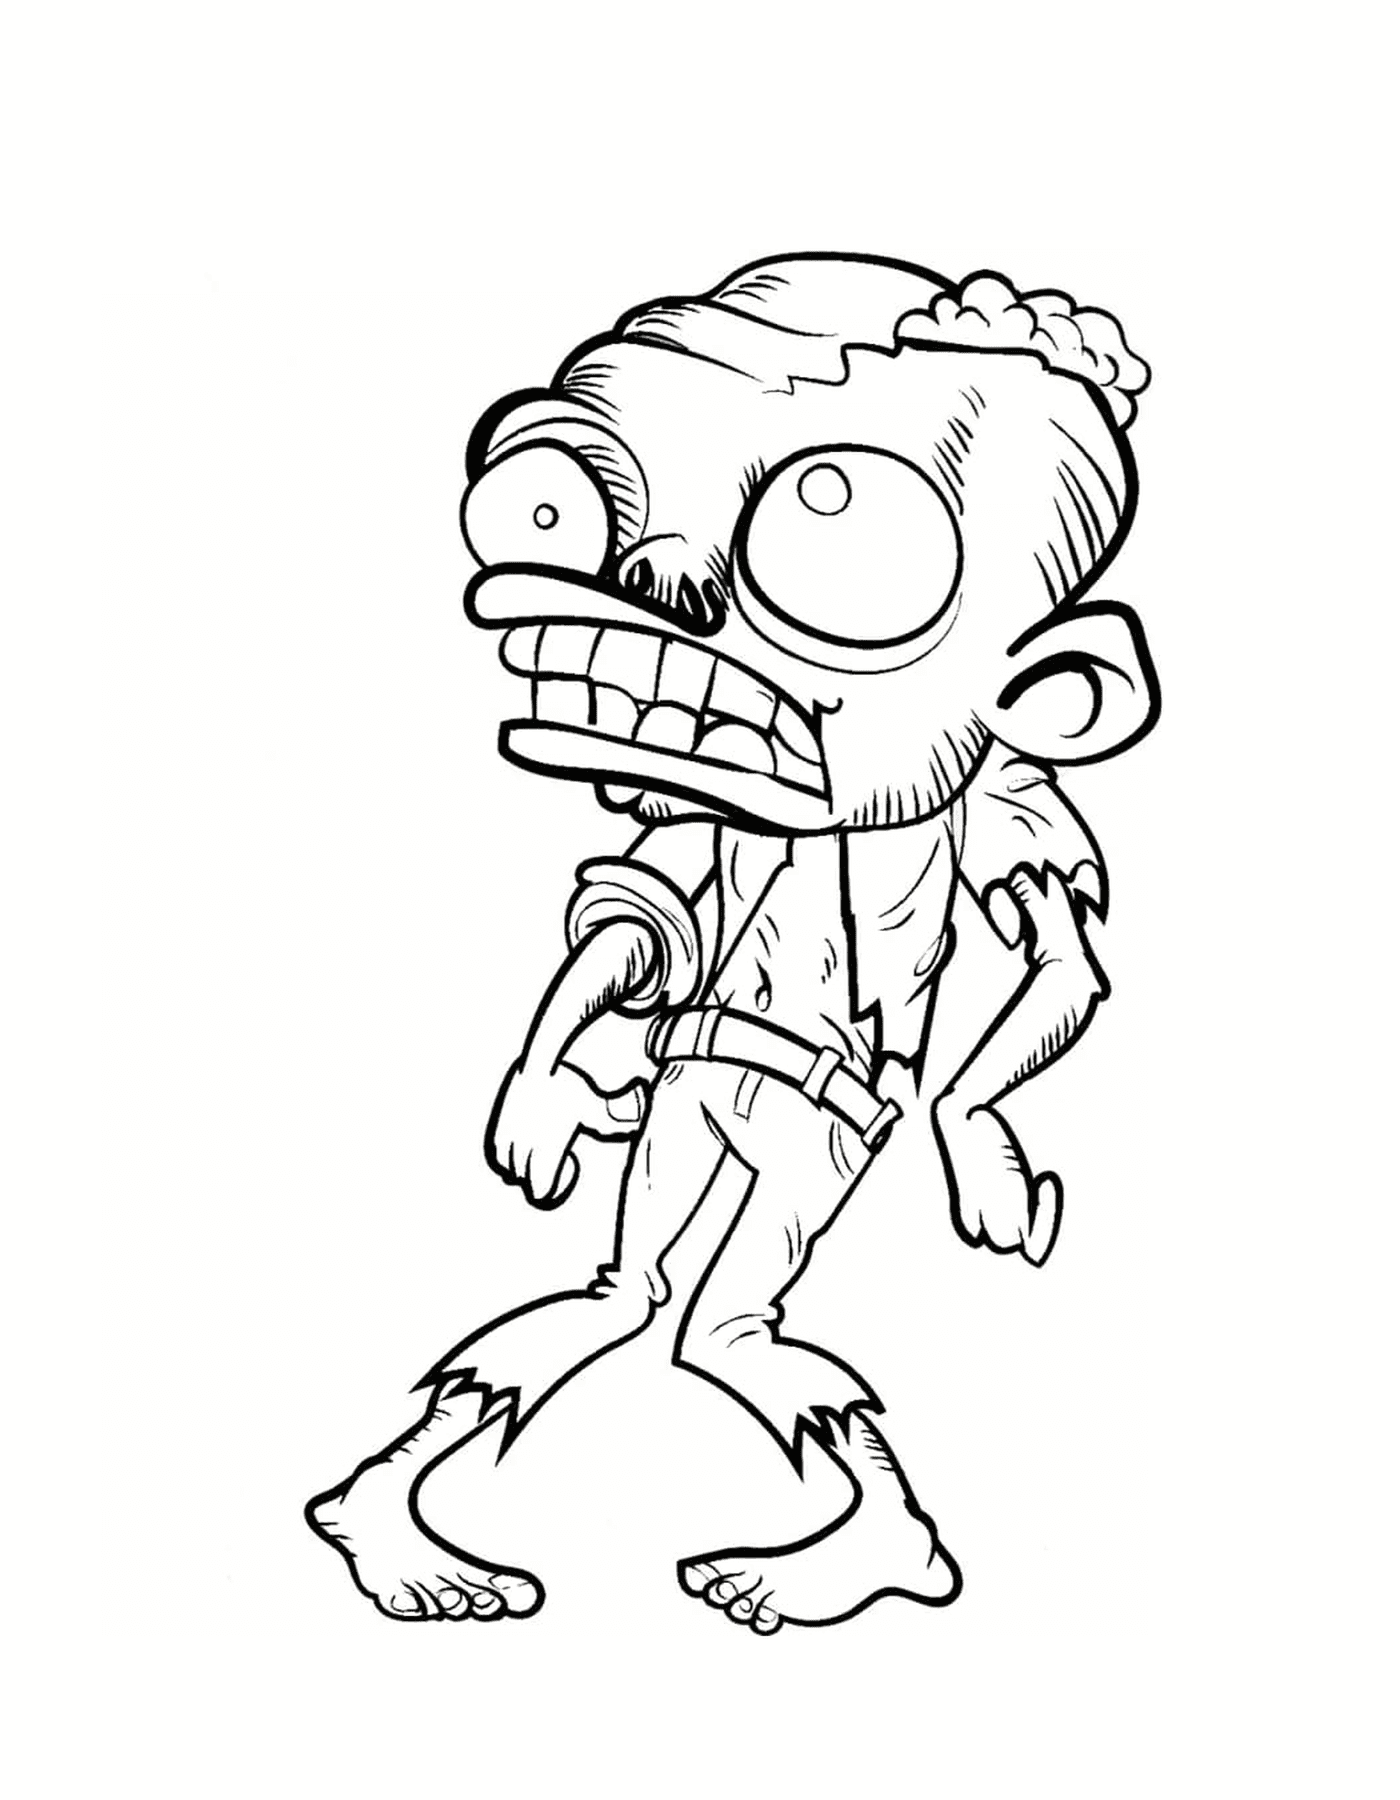  Ein wirklich hässlicher Zombie 